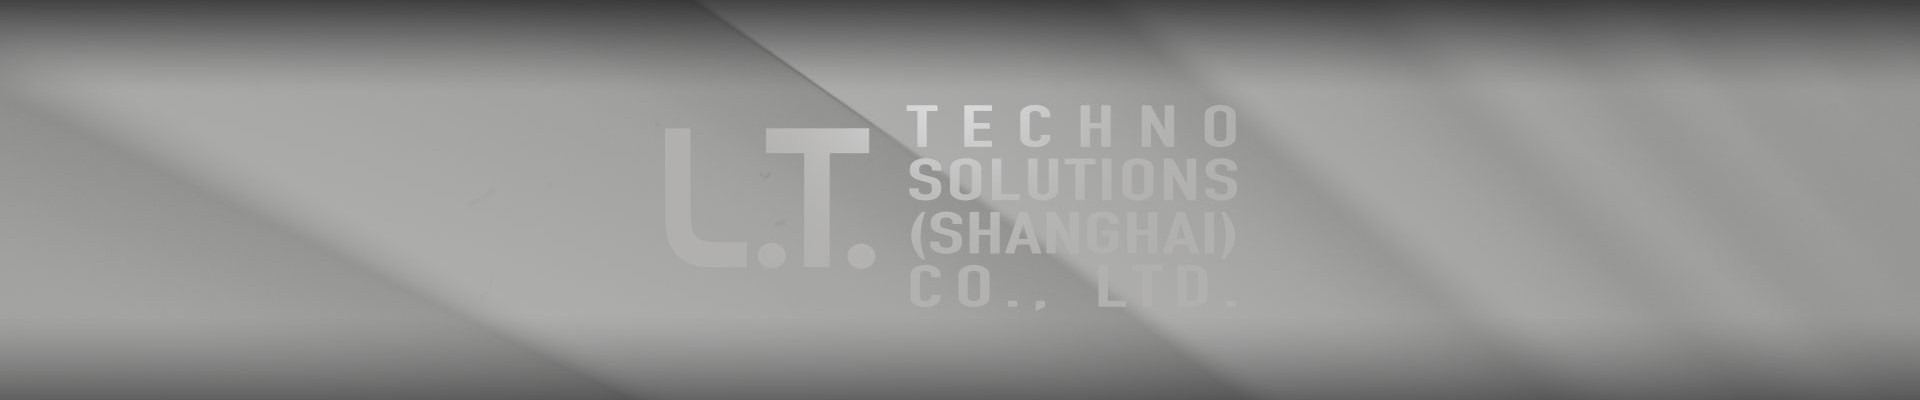 栗特贸易（上海）有限公司个人信息保护政策 - 我们提供全面一条龙服务，从您选择包装材料到设计、样品、生产以及配送包材，我们都提供大力支持。